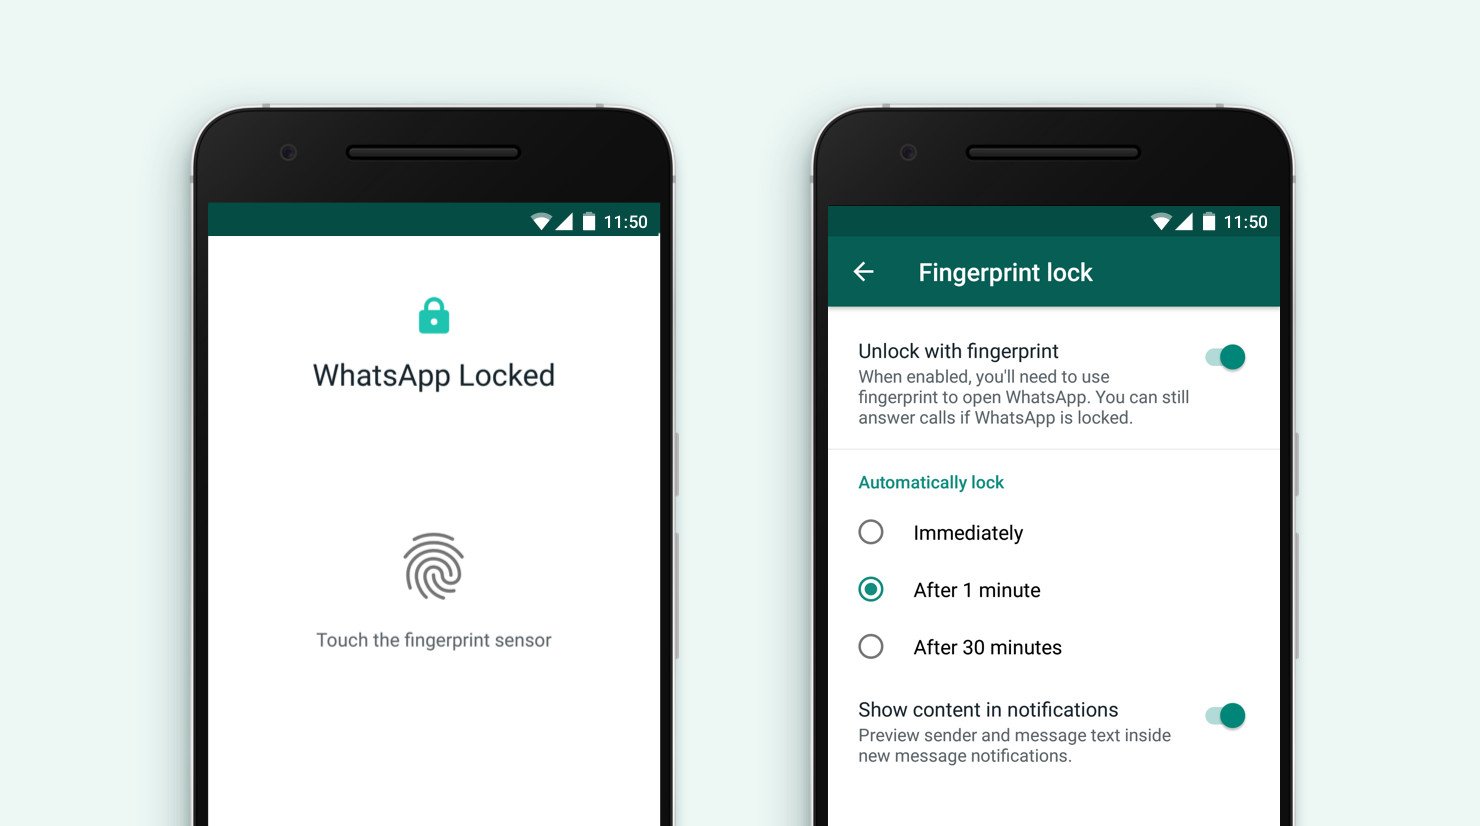 WhatsApp Fingerprint lock settings screenshot